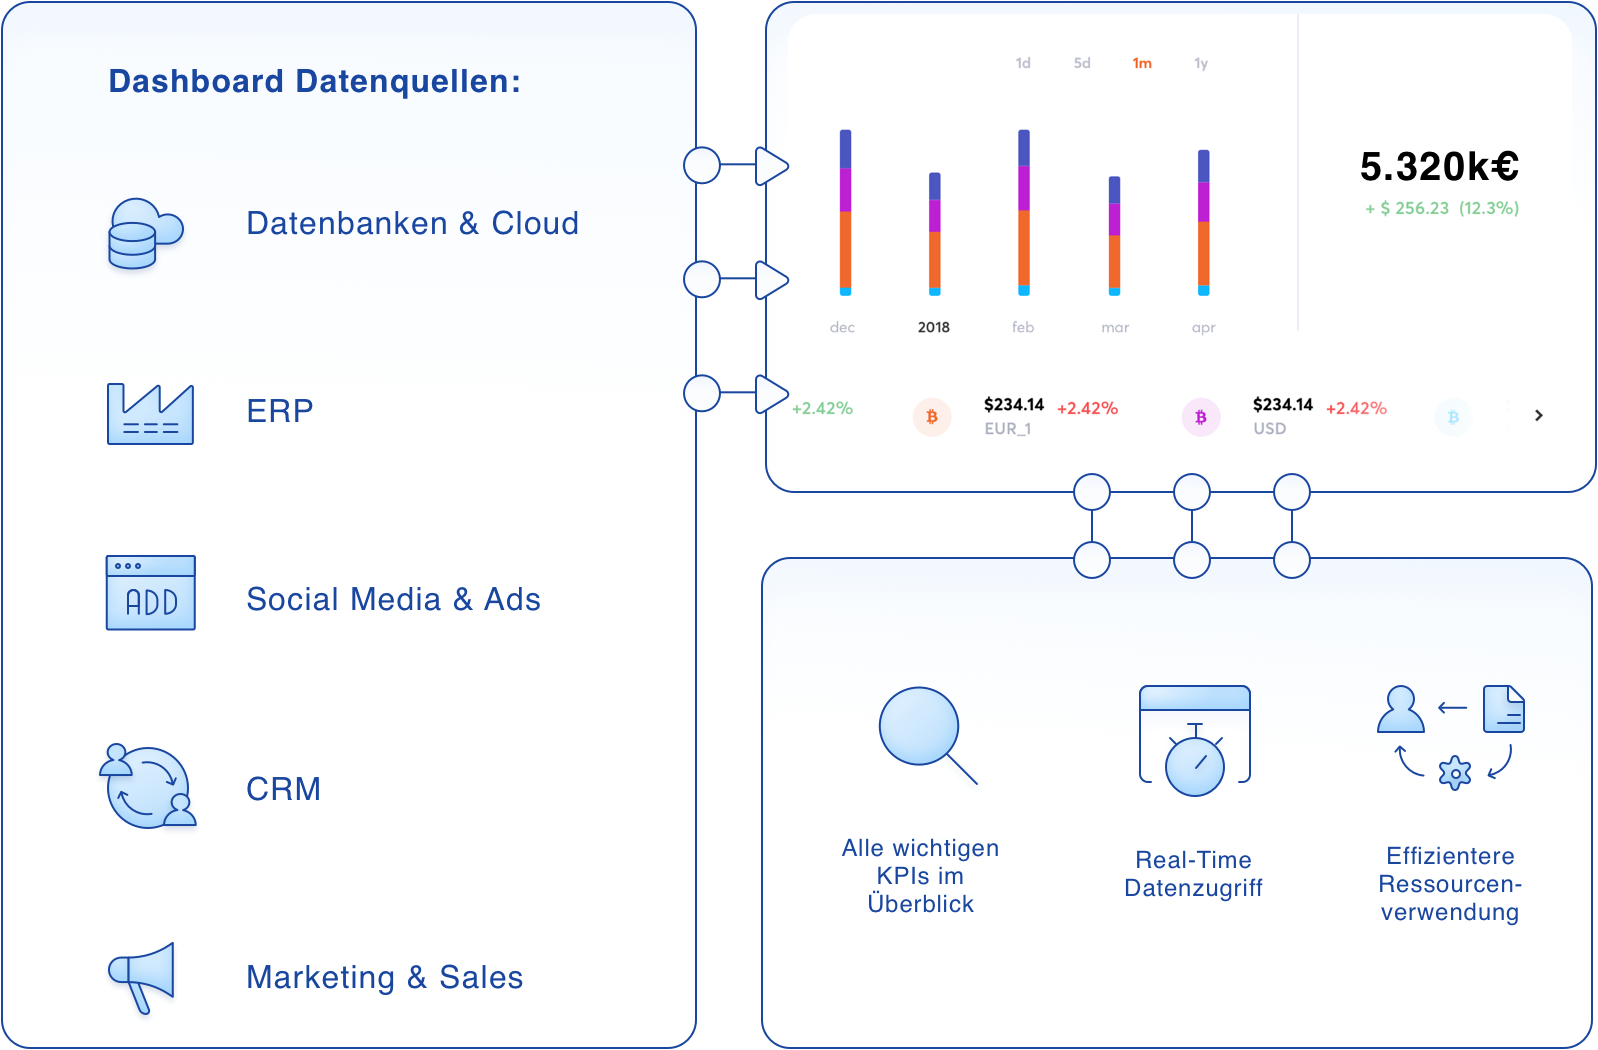 Anwendungsbeispiel iPaaS Dashboard als zentrale Übersicht, Datenbanken und Cloud, ERP, Social Media und Ads, CRM, Marketing und Sales